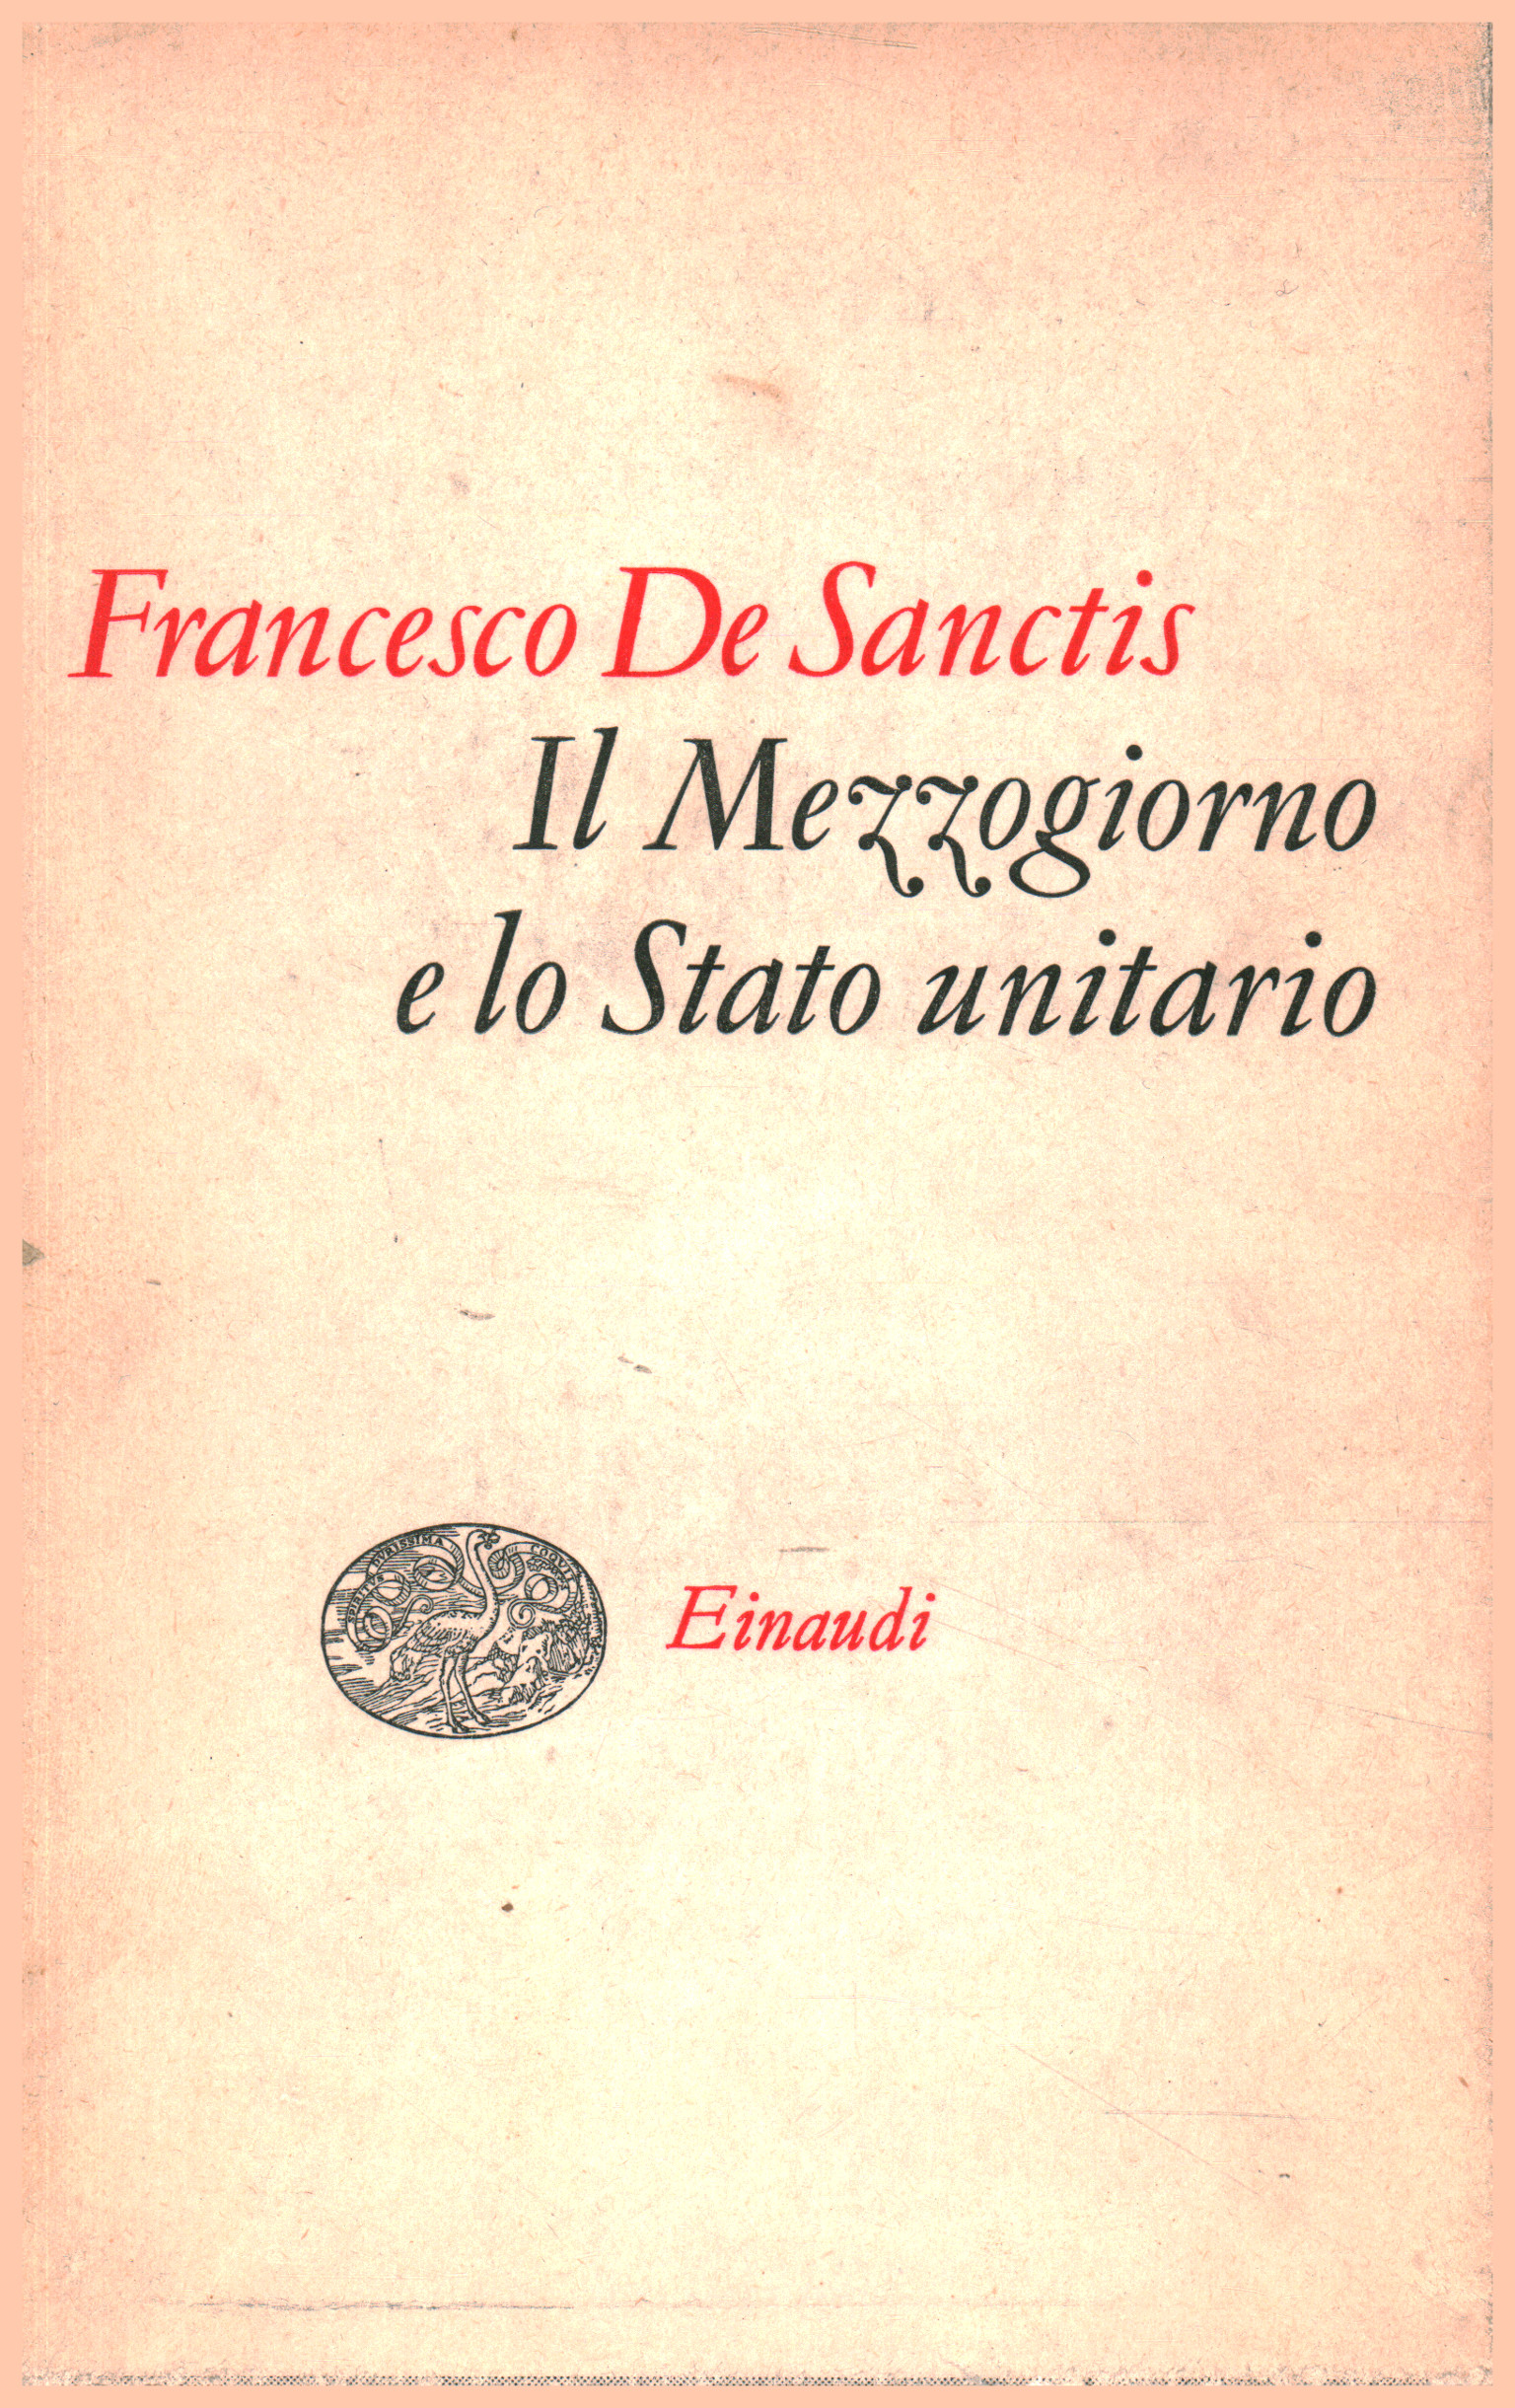 The Mezzogiorno and the unitary state